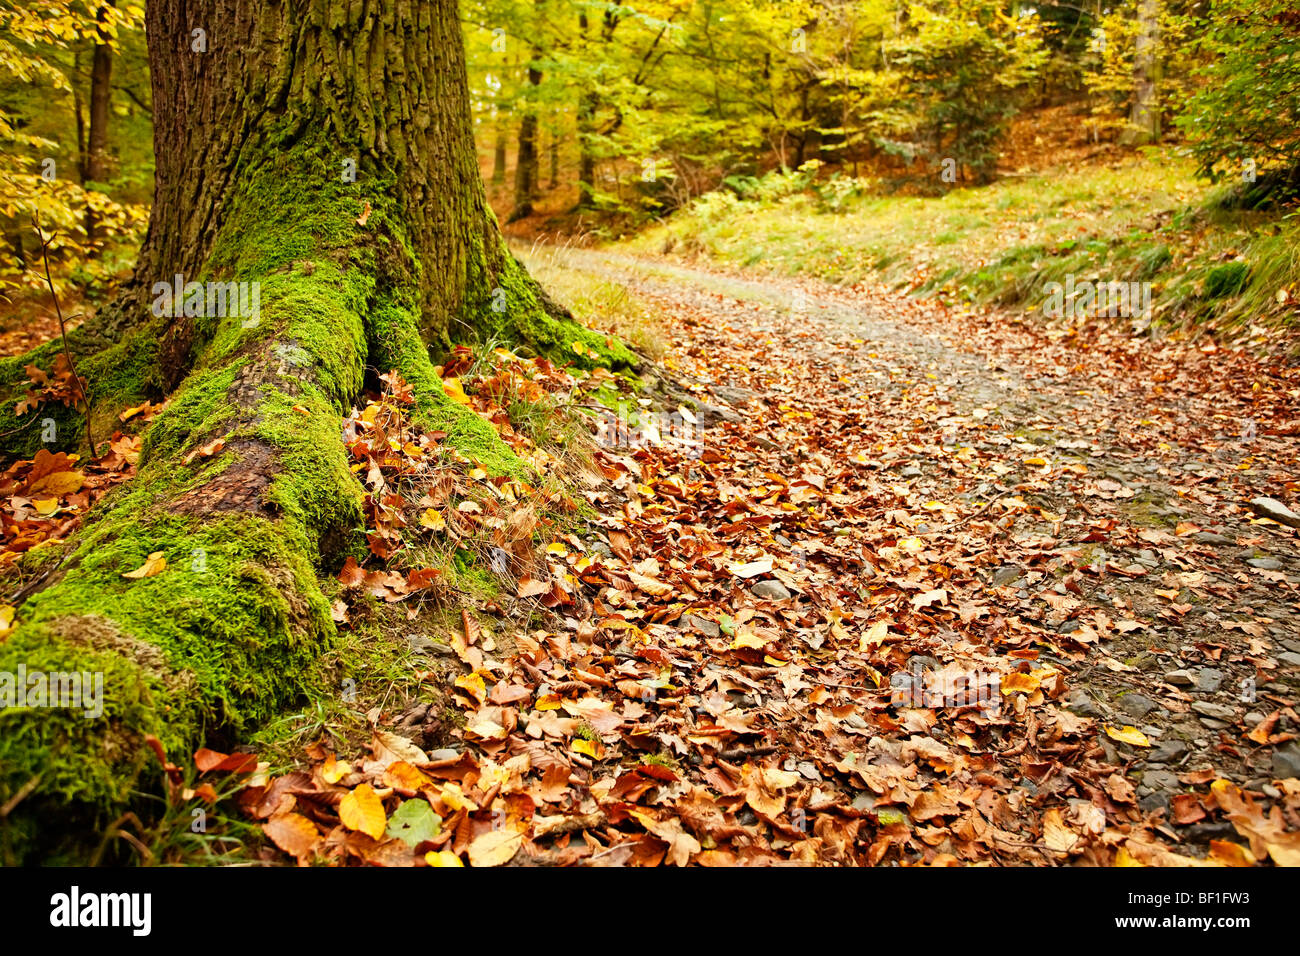 Racines d'arbres couvertes de mousse et chemin dans une forêt d'automne avec des feuilles mortes couvrant le sol. Mise au point au premier plan. Banque D'Images